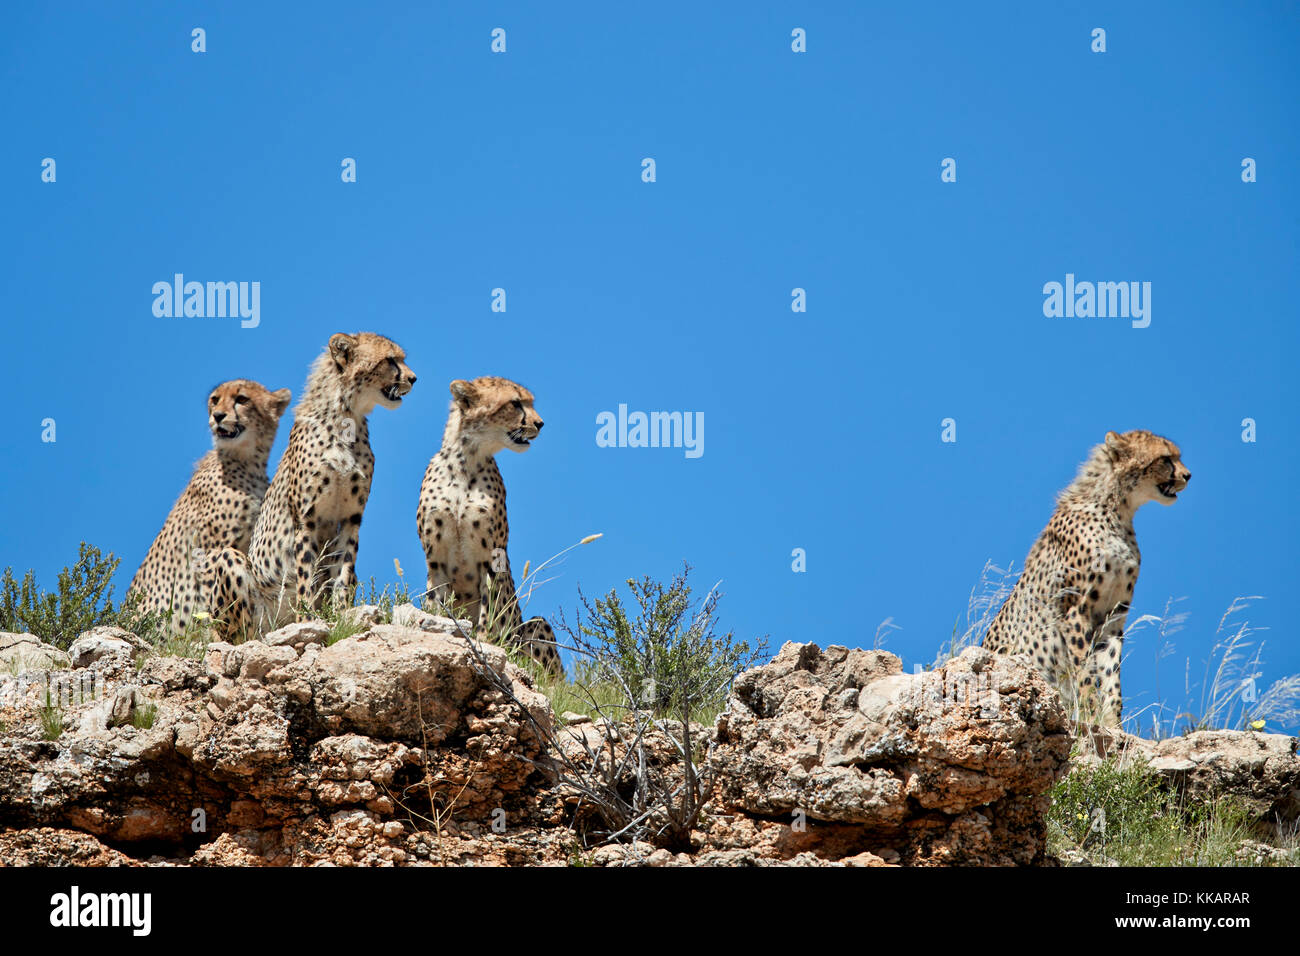 Cuatro guepardo (Acinonyx jubatus), el parque transfronterizo Kgalagadi, Sudáfrica, África Foto de stock